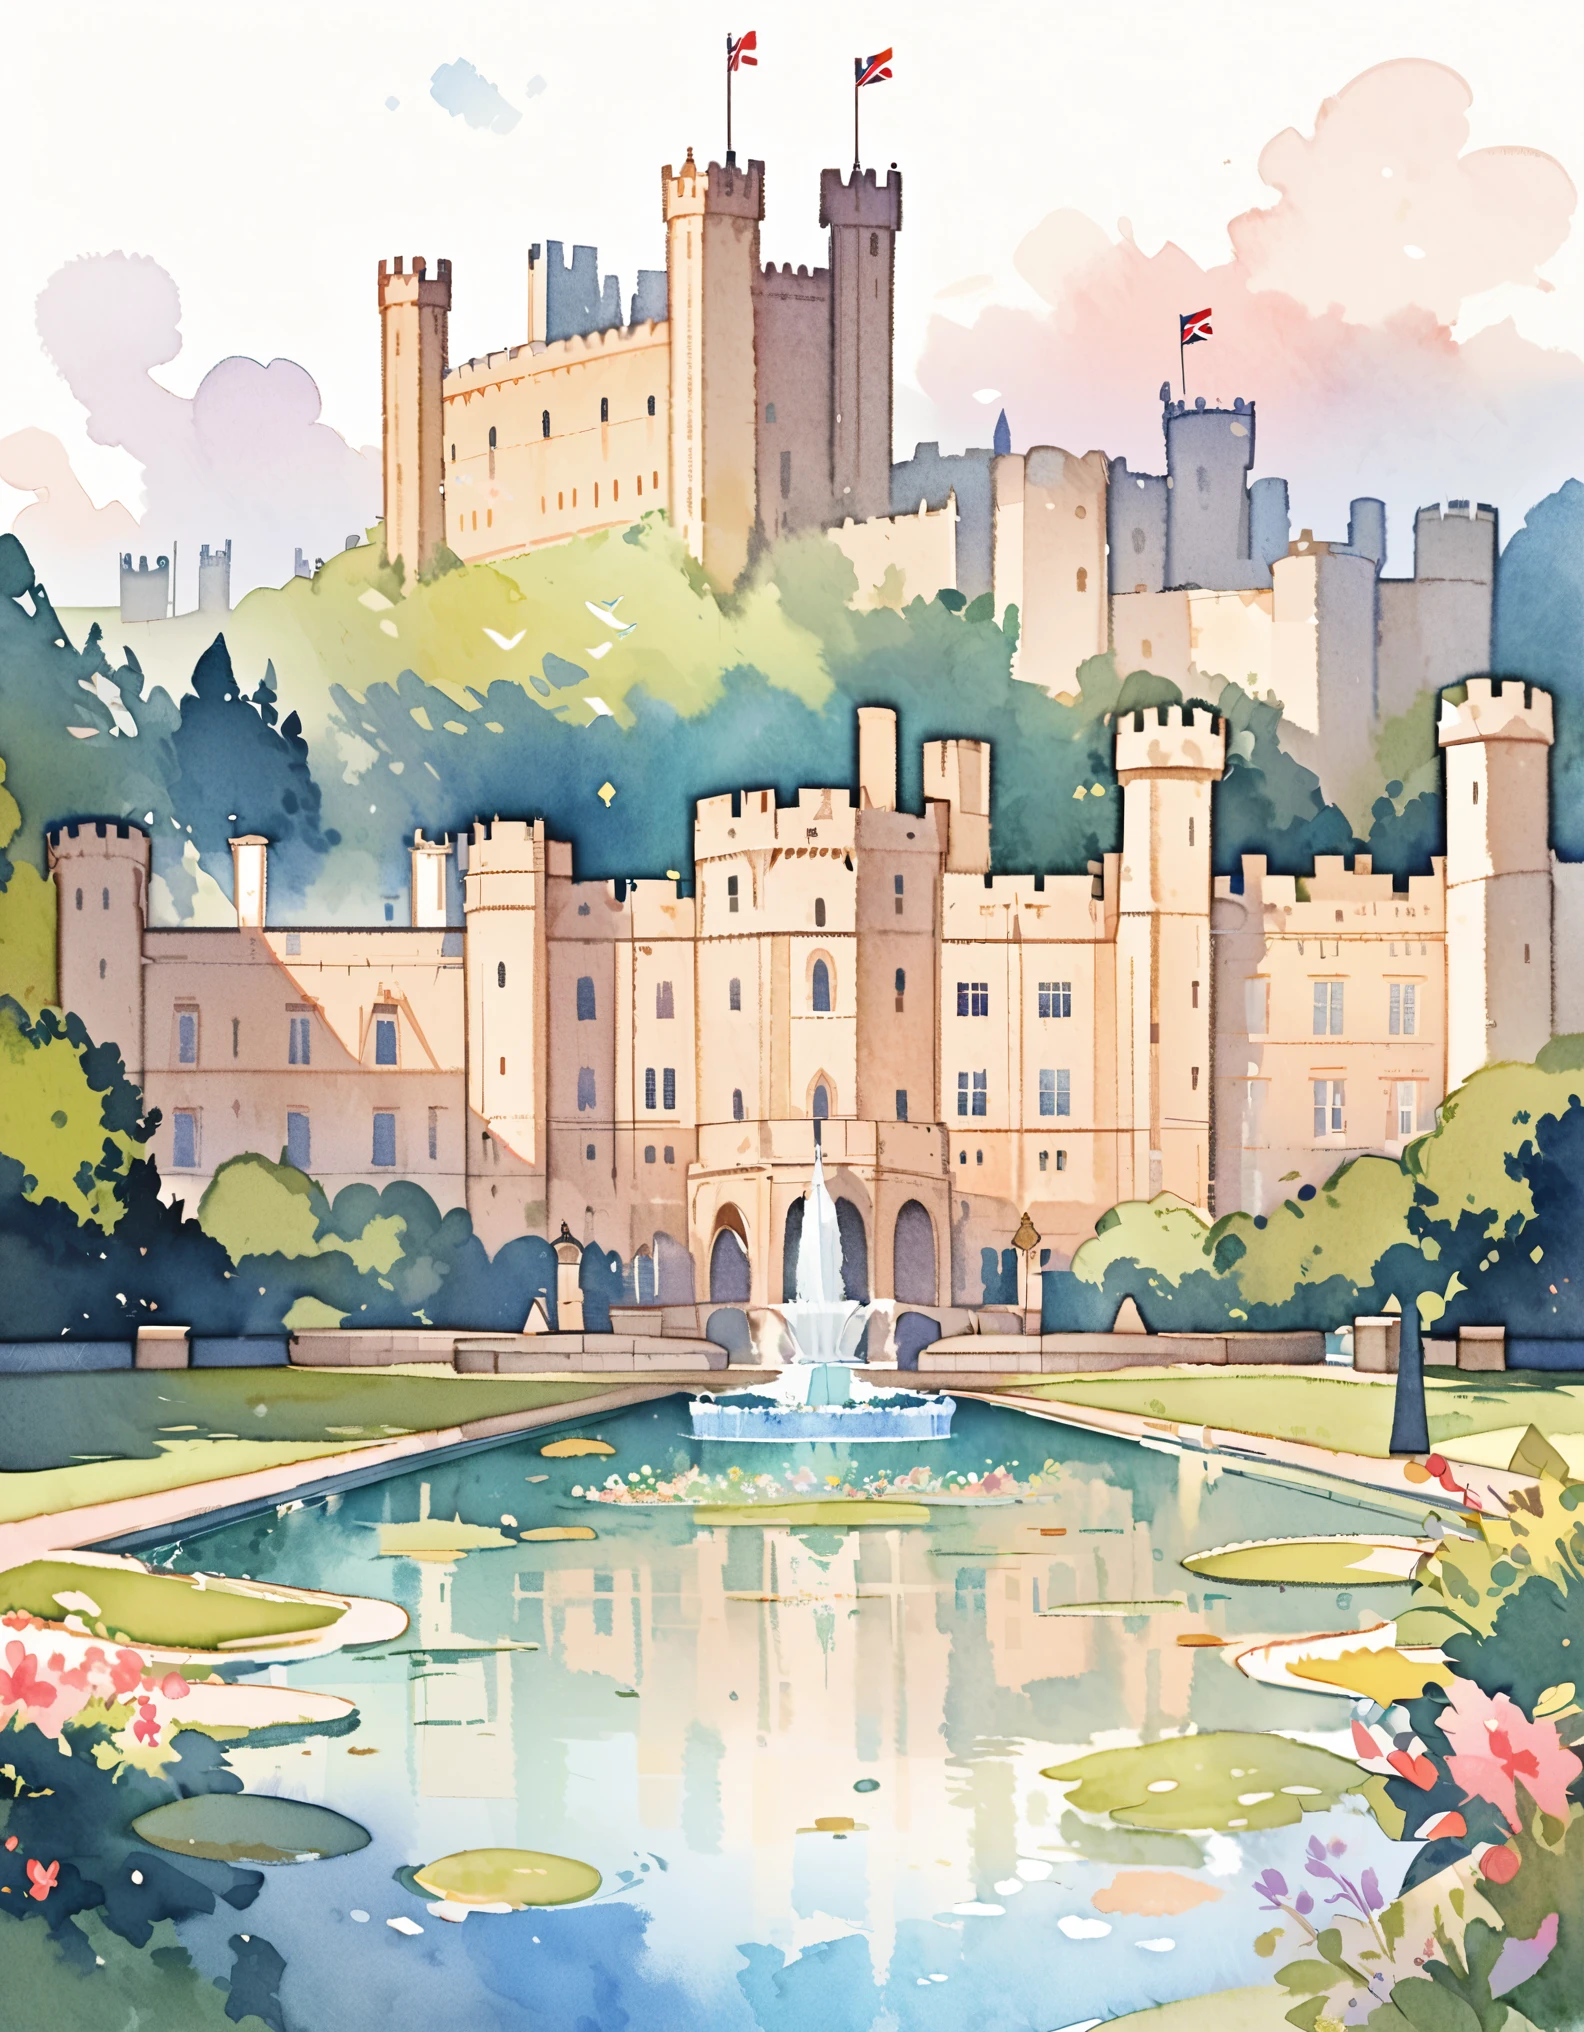 温莎古堡, 英国君主的官方皇家住所, 寂静宫殿, 英格兰的城堡, 水彩:1.2, 奇异而精致, 就像儿童书中的插图一样&#39;的书, 柔和的笔触, 暗淡, 淡淡的色彩营造出梦幻般的外观.